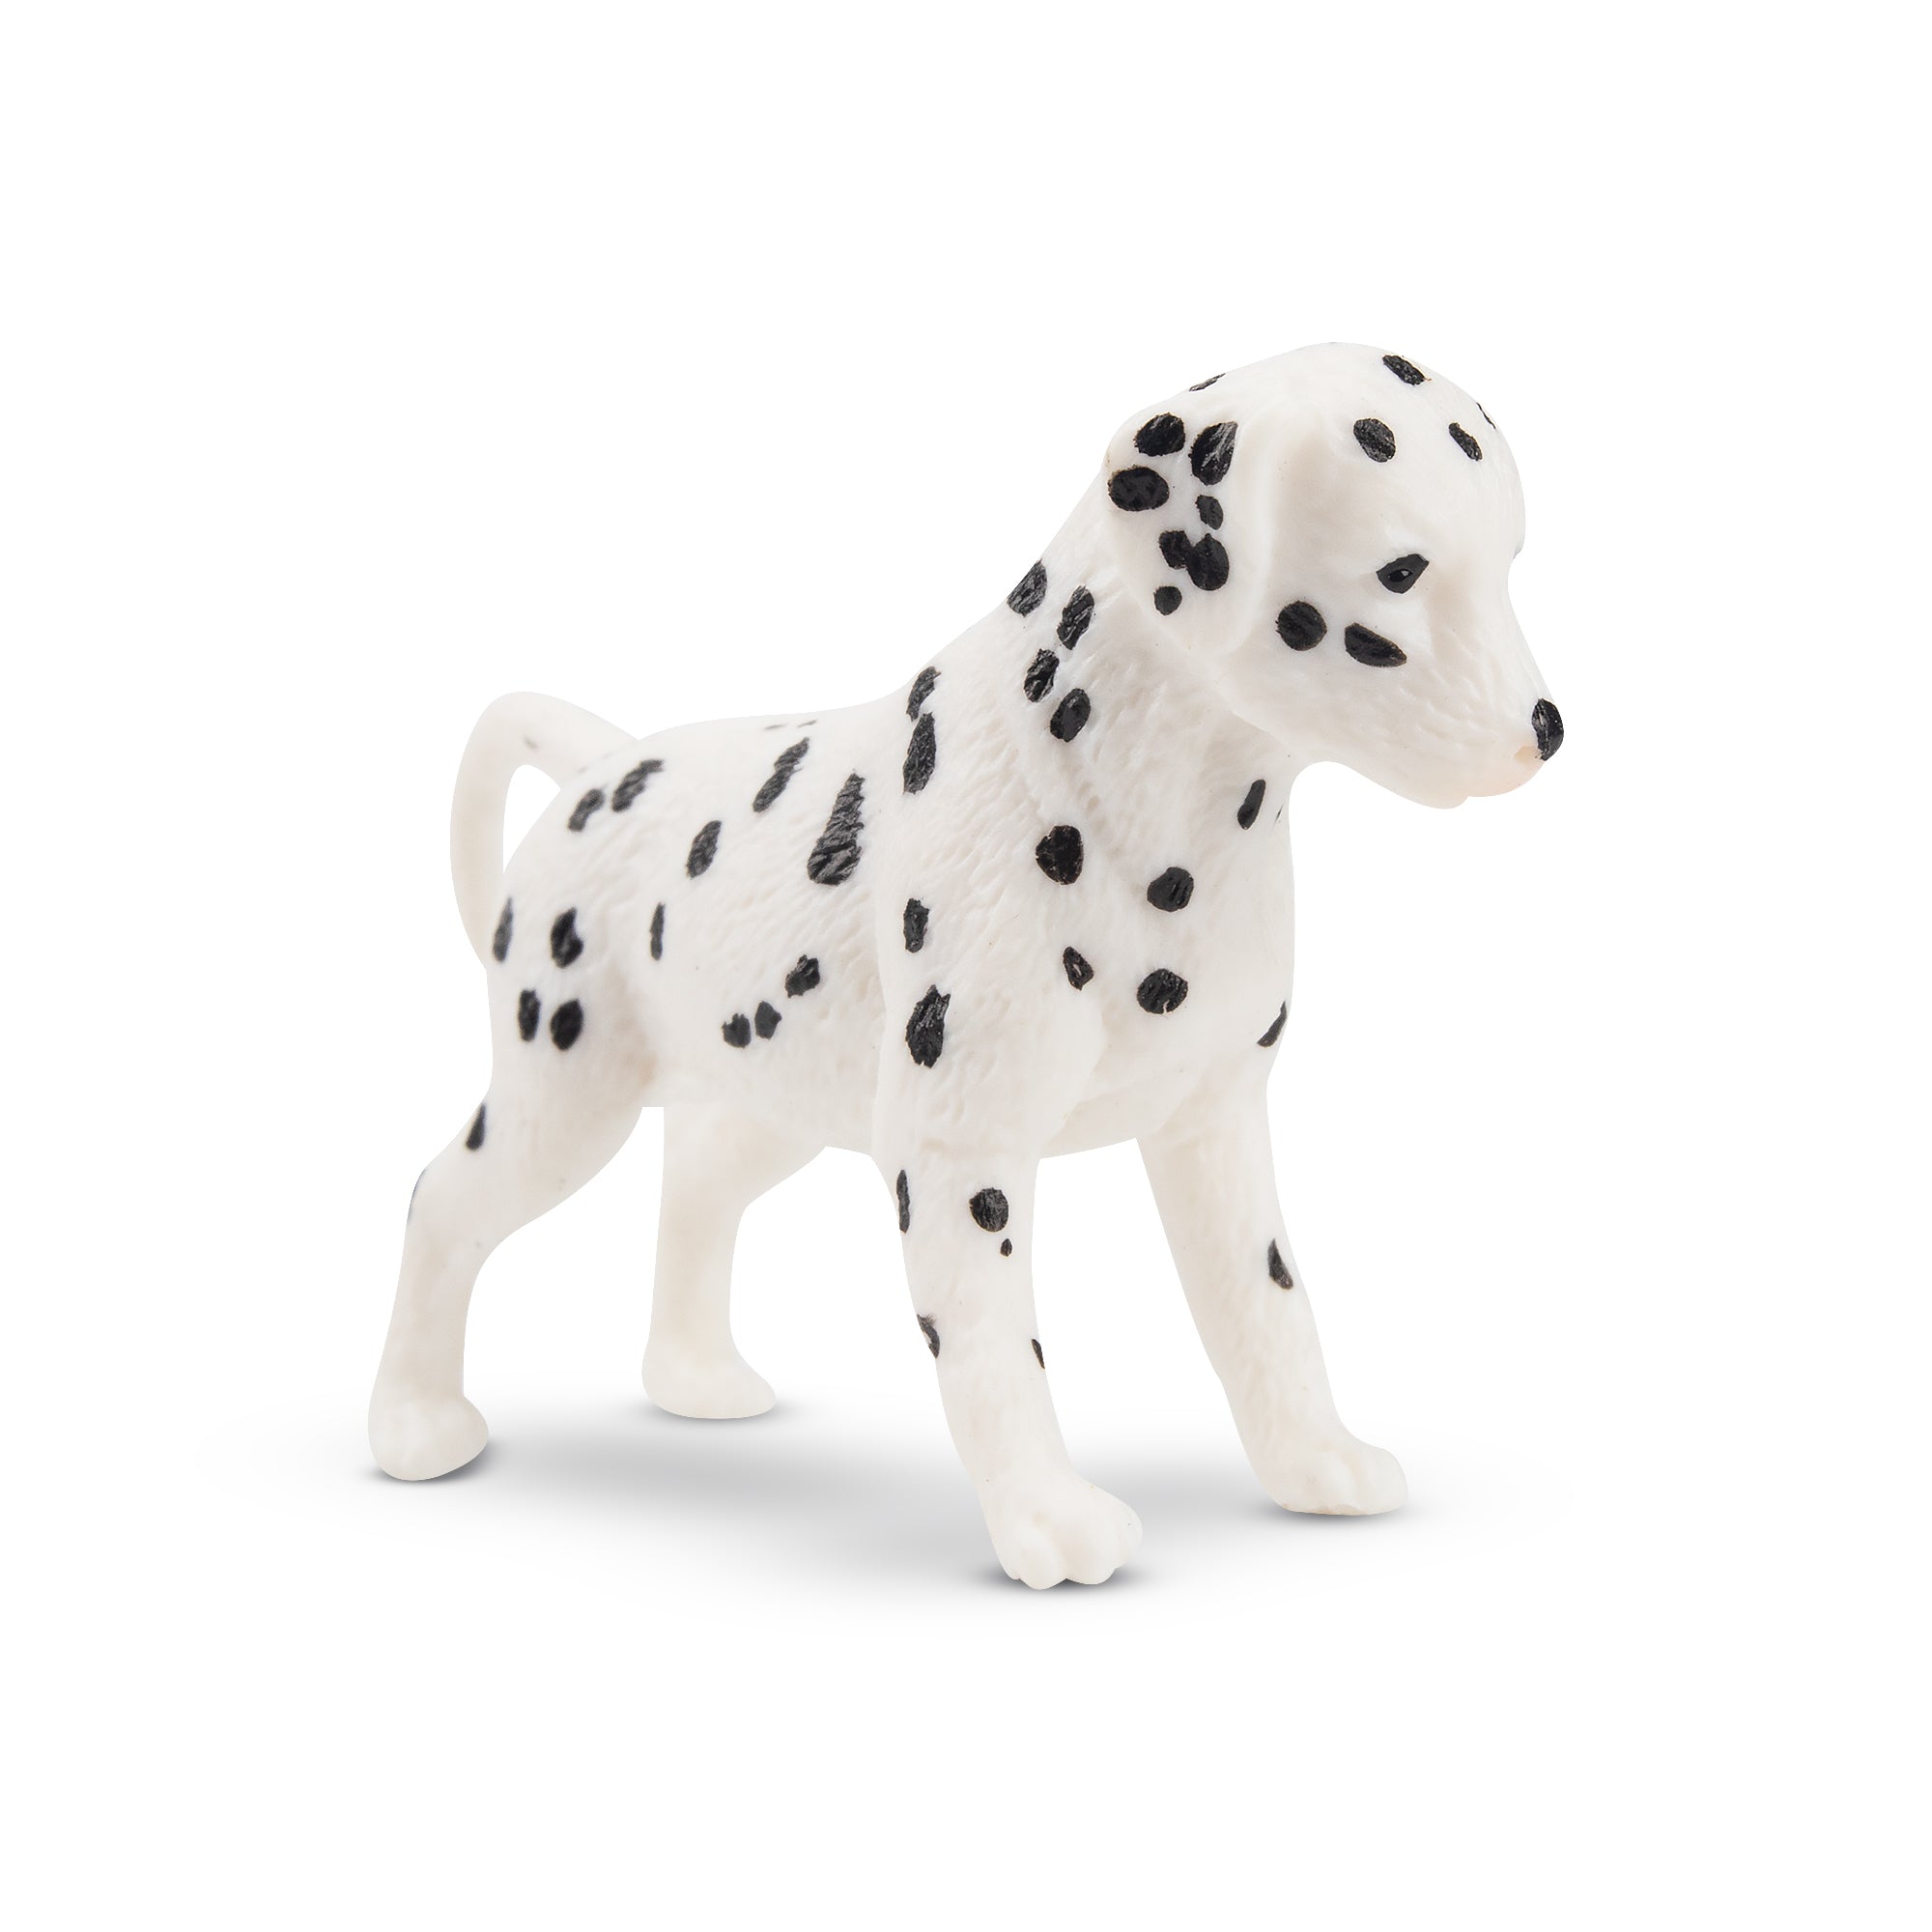 Toymany Mini Standing Dalmatian Puppy Figurine Toy